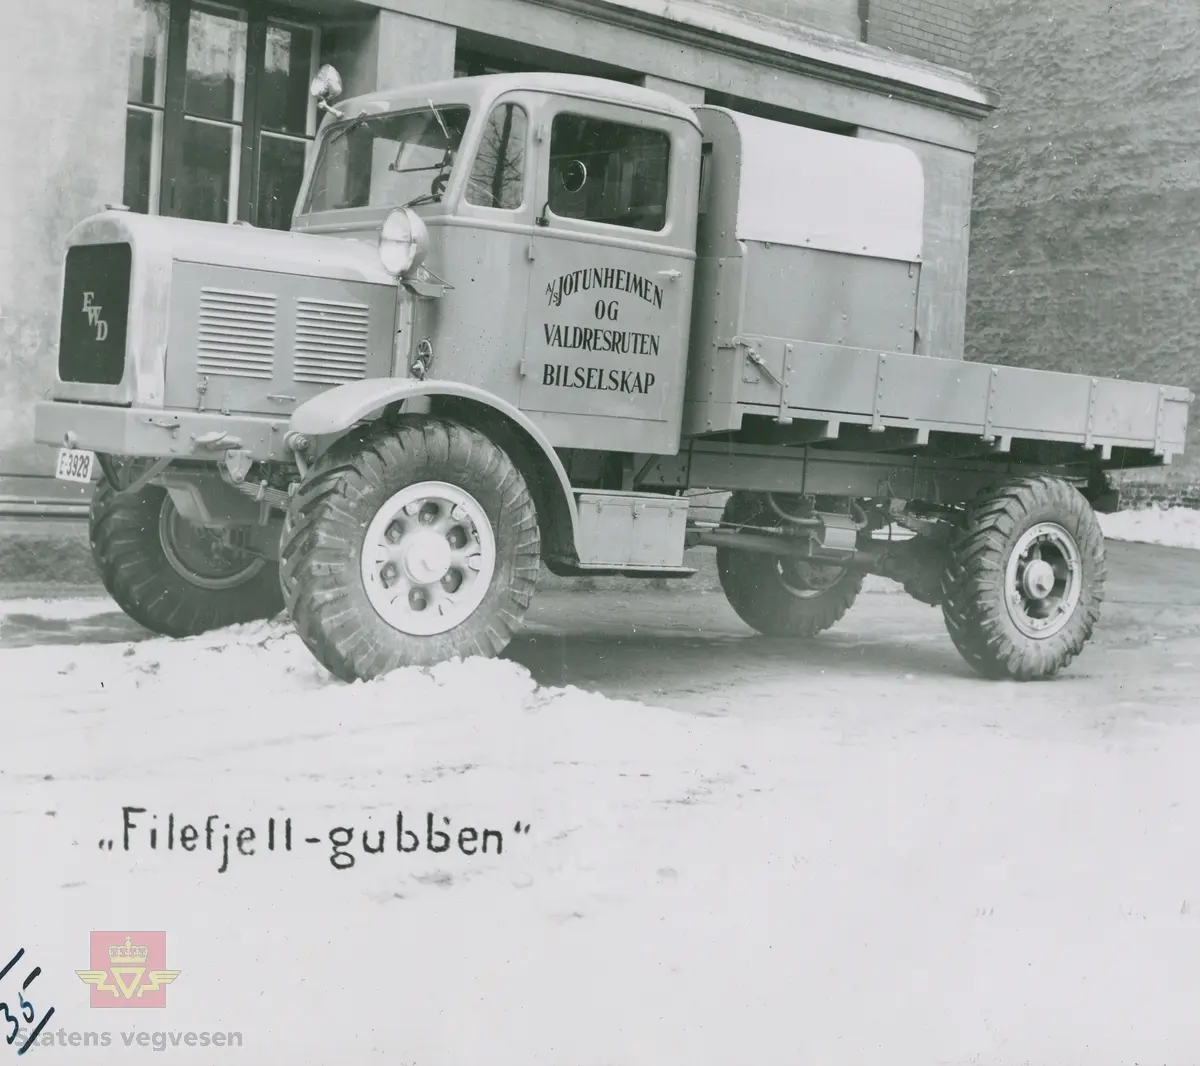 Tekst på bildet "Filefjell-Gubben". FWD lastebil modell SU fra A/S Jotunheimen og Valdresruten Bilselskap (JVB) med kjennetegn E-3928. Bilen ble levert til Jotunheimen, Valdresruten i 1936, og holdt vegen over Filefjell åpen. Klikk på pilen til høyre for å se tilleggsbilder: Legg merke til benkene på lasteplanet med tak og presenning til ly for vær og vind for brøytemannskap.   
Etter en tøff vinter 1936-1937 mottok Colbjørnsen brev fra JVB, A/S Jotunheimen og Valdresruten Bilselskap  30.04.1937, hvor de sier seg meget fornøyd med bilen de kjøpte før jul i 1936. Jf. boka "Familiefirmaet-utenom allfarvei/2000 Årsboken."Colbjørnsen & Co A/S, av Bjørn Ausjen Johannessen. Bilde av "Filefjell-Gubben" i A/S Jotunheimen og Valdresruten Bilselskap  på en av veivesenets garasjer på Filefjell vises i tilleggbildene.  FWD lastebilen "Filefjell-Gubben" ble innkjøpt av JVB  i 1936. Den til da kraftigste i landet. Vegfolk kom da også fra fjern og nær for å bivåne brøytingen, og for å se og lære. 
 "A/S Jotunheimen og Valdresruten Bilselskap  ble etablert i 1919 og har vært selve livsnerven gjennom Valdresbygdene. "Filefjell-Gubben" ble satt inn i arbeidet med å holde Filefjellvegen oppe. Med felles innsats og arbeid fra Staten og selskapets side, lykkes det å holde Filefjellvegen farbar for vintertrafikk vinteren 1936-1937, den første fjellovergang i Norge som var åpen året rundt." Jf. Kilde: "JVB. Den spede begynnelse-A/S Jotunheimen og Valdresruten Bilselskap."  
Personene på bildet er ukjente. Bildene som vises er både fra Oslo og Filefjell. 
Bildene er registrert enkeltvis på nr: 
Bilde 2) NVM 00-F-33671
Bilde 3  NVM 00-F-33672
Bilde 4  NVM 00-F-33704
Bilde 5) NVM 00-F-33705
Bilde 6) NVM 00-F-33707
Bilde 7) NVM 00-F-33708
Bilde 8) NVM 00-F-33710
Bilde 9) NVM 00-F-33711
Bilde 10)NVM 00-F33659
Bilde 11)NVM 00-F33660